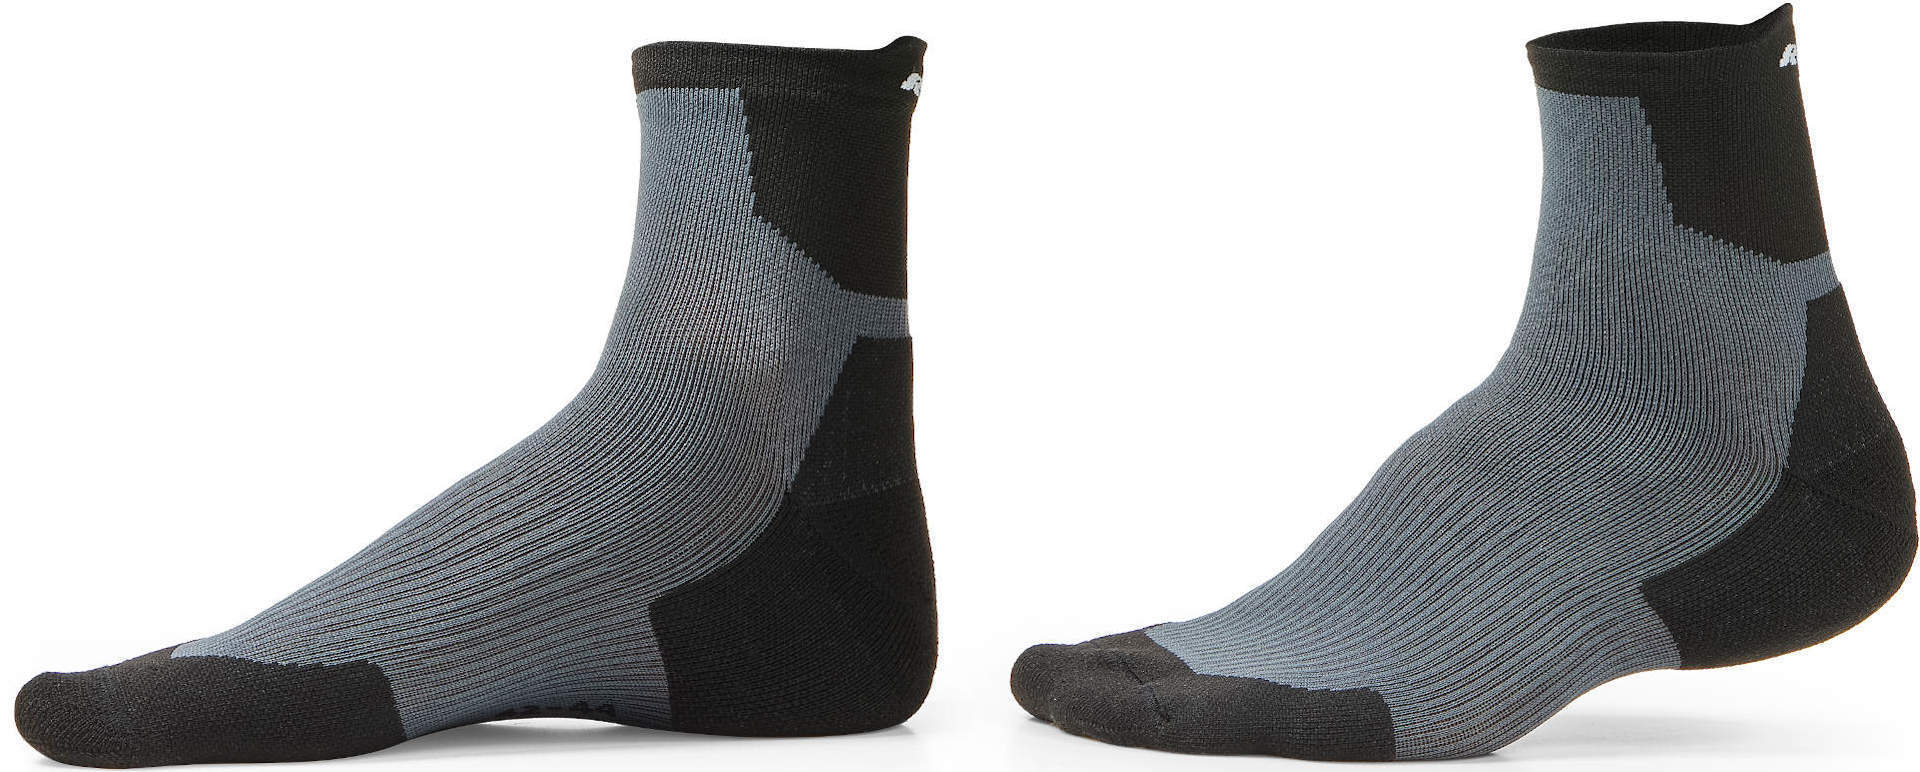 Revit Javelin Socks  - Black Grey